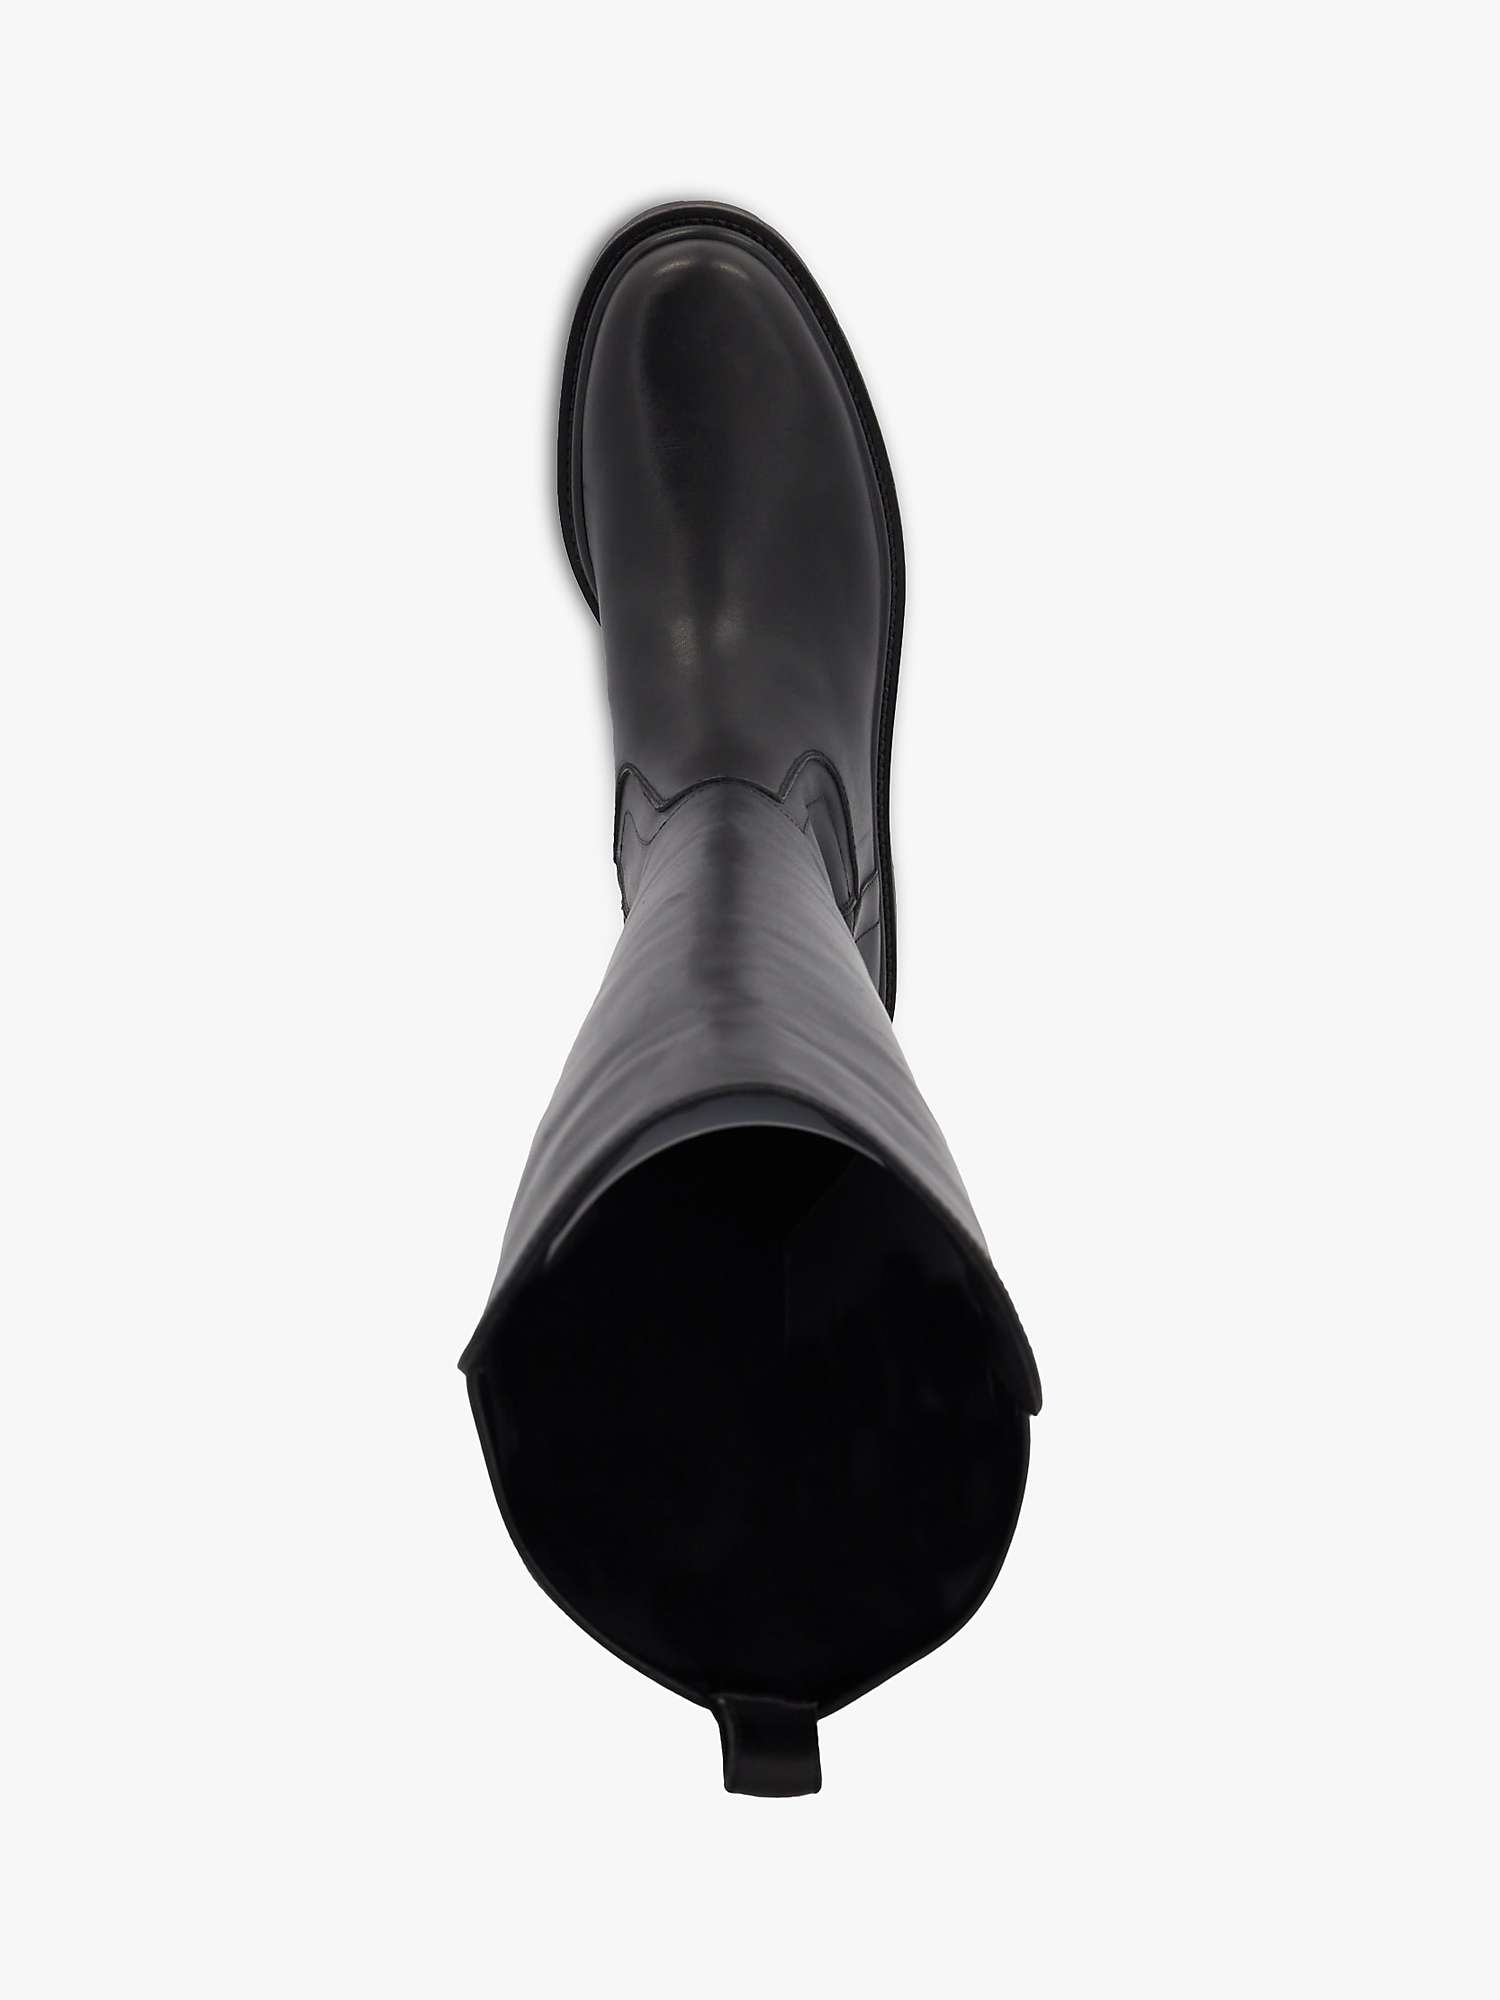 Buy Dune Tempar Leather Knee High Boots, Black Online at johnlewis.com